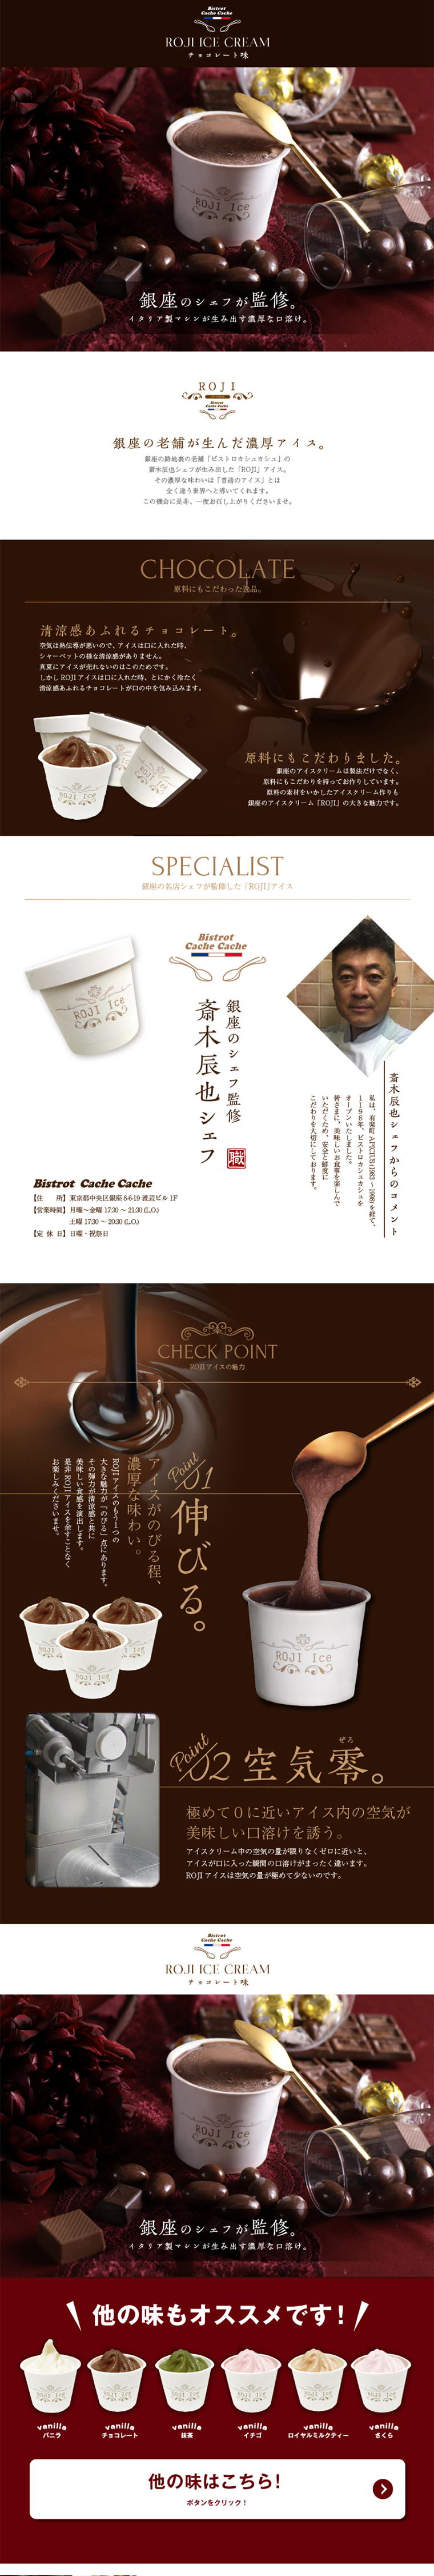 銀ROJI ICE チョコレート_pc_1